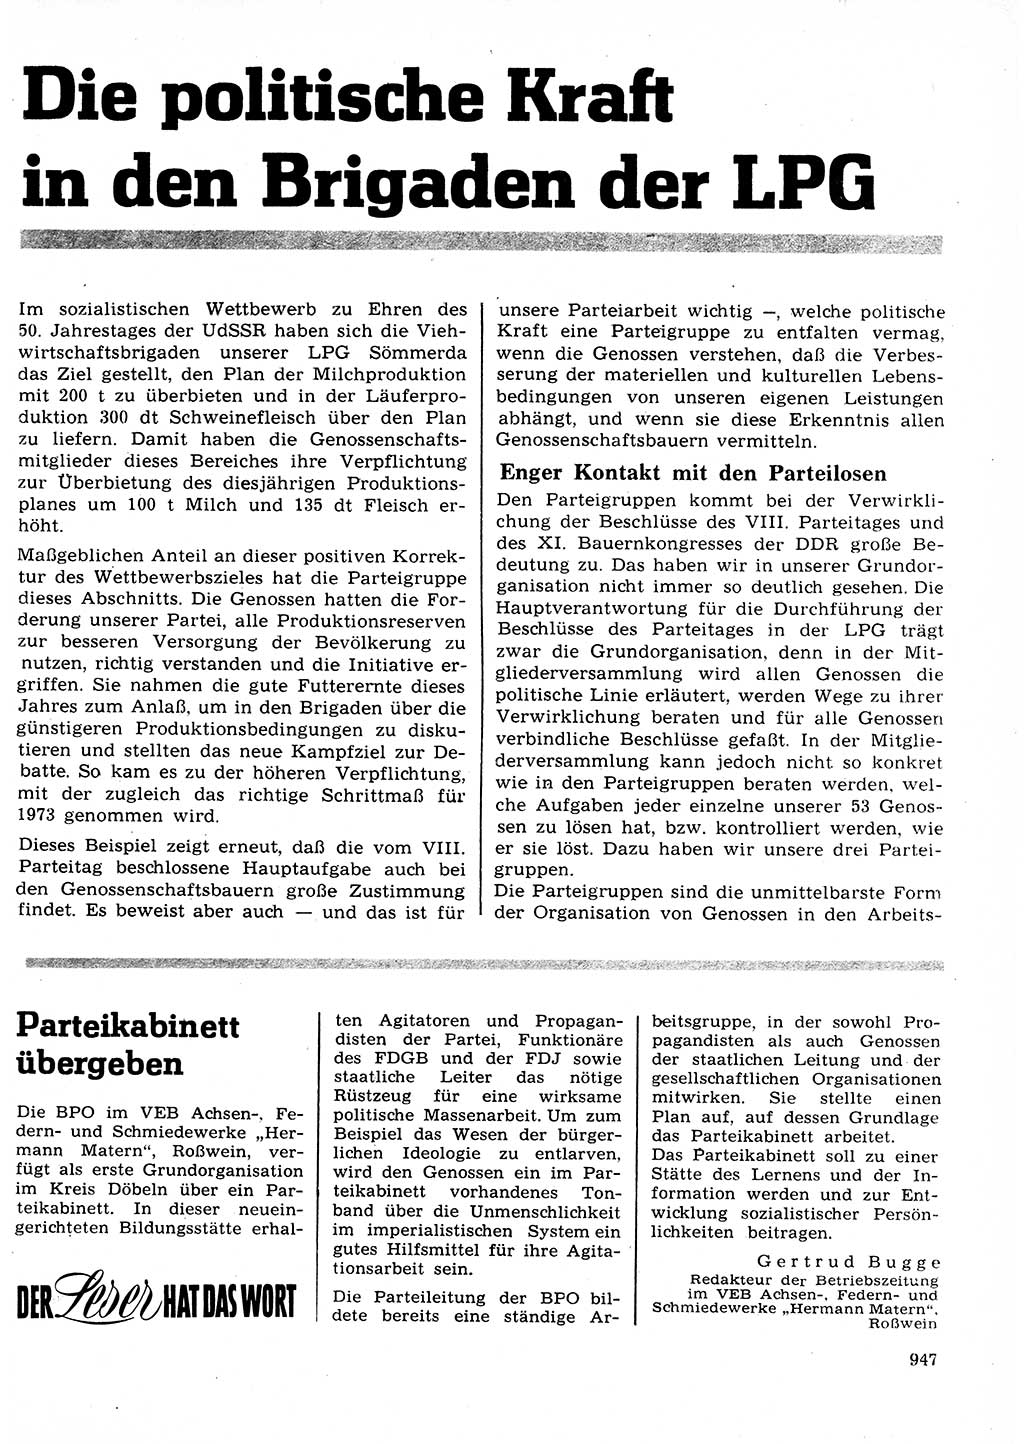 Neuer Weg (NW), Organ des Zentralkomitees (ZK) der SED (Sozialistische Einheitspartei Deutschlands) für Fragen des Parteilebens, 27. Jahrgang [Deutsche Demokratische Republik (DDR)] 1972, Seite 947 (NW ZK SED DDR 1972, S. 947)